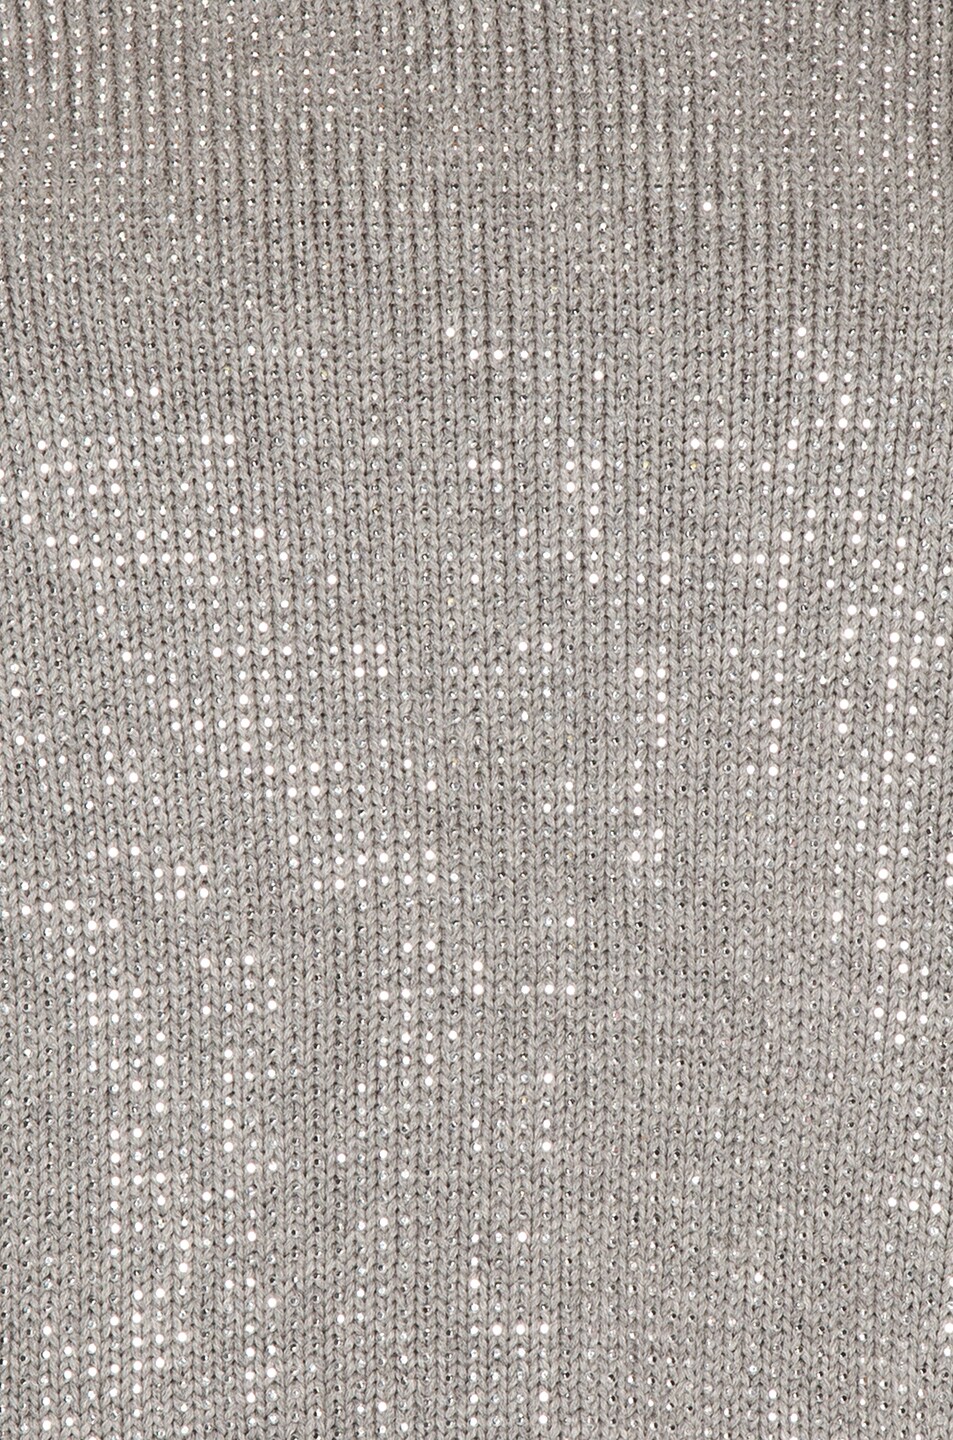 RTA Beckett Sweater in Silver Stud | FWRD